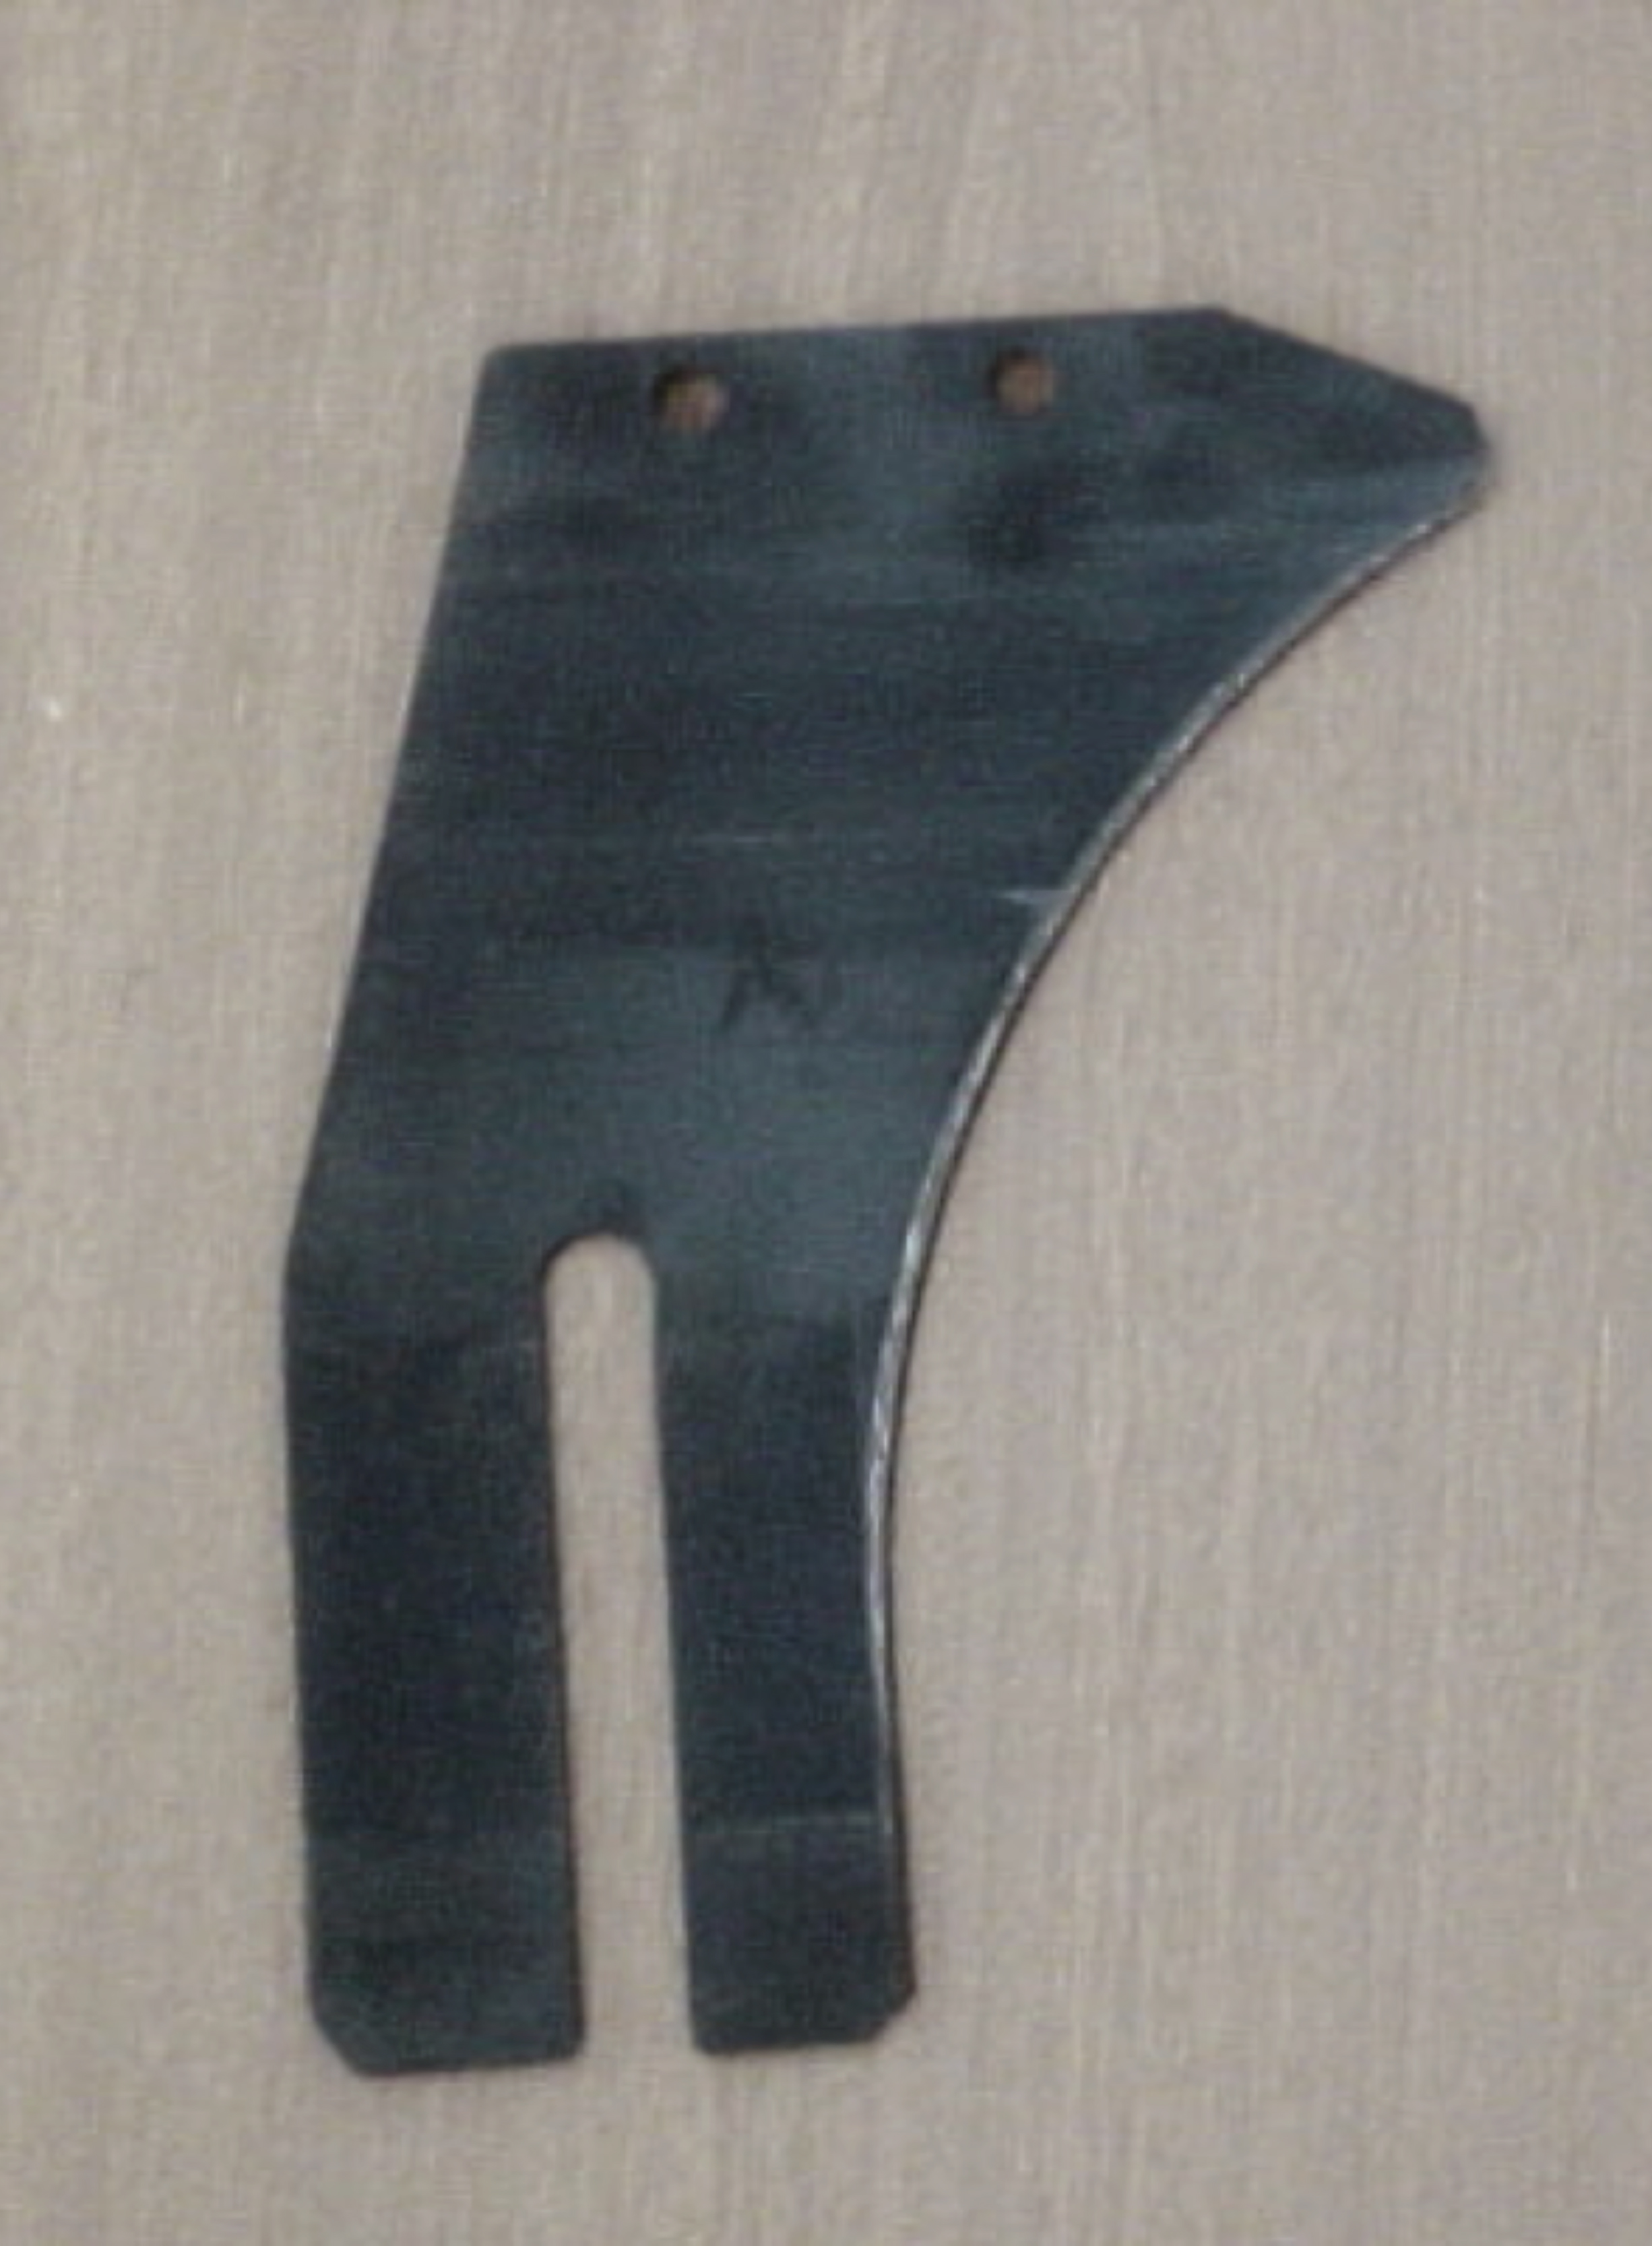 figura 4: detalle del cuchillo divisor